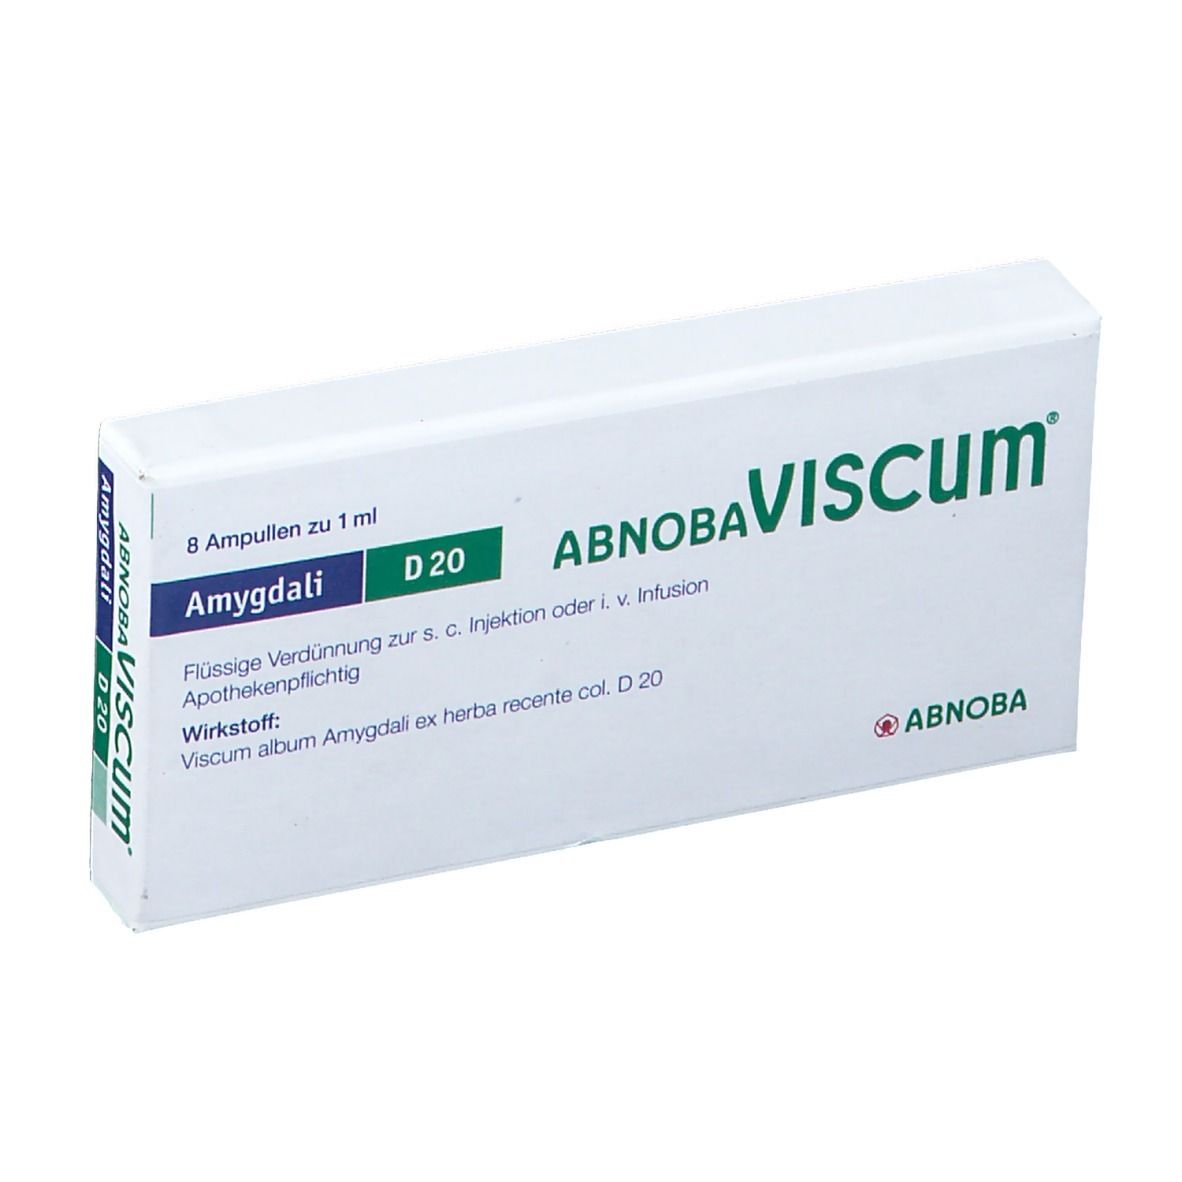 abnobaVISCUM® Amygdali D20 Ampullen